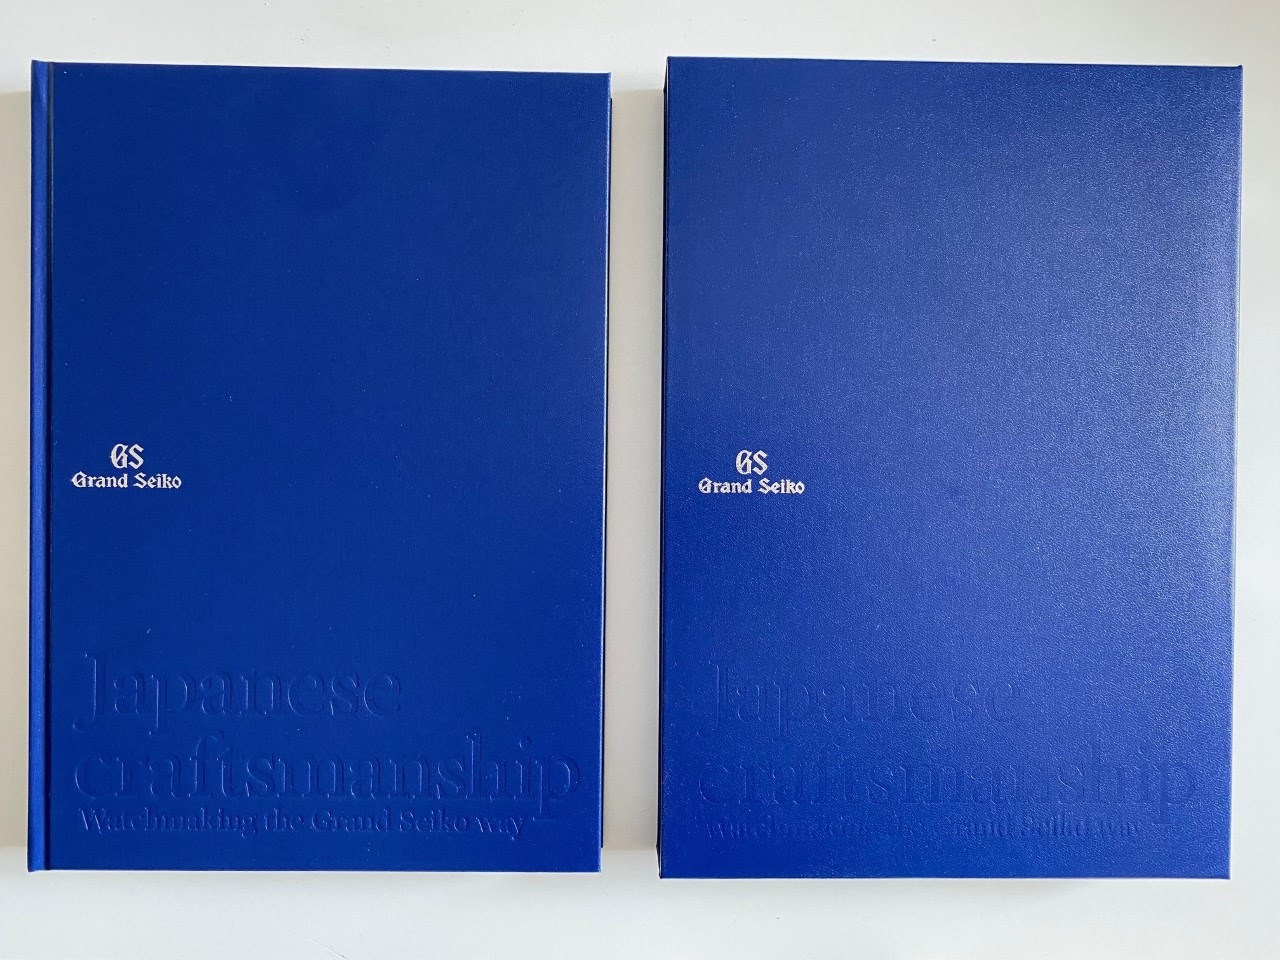 Collectors Market - FS: Grand Seiko Book 60th Anniversary Hard Cover Book